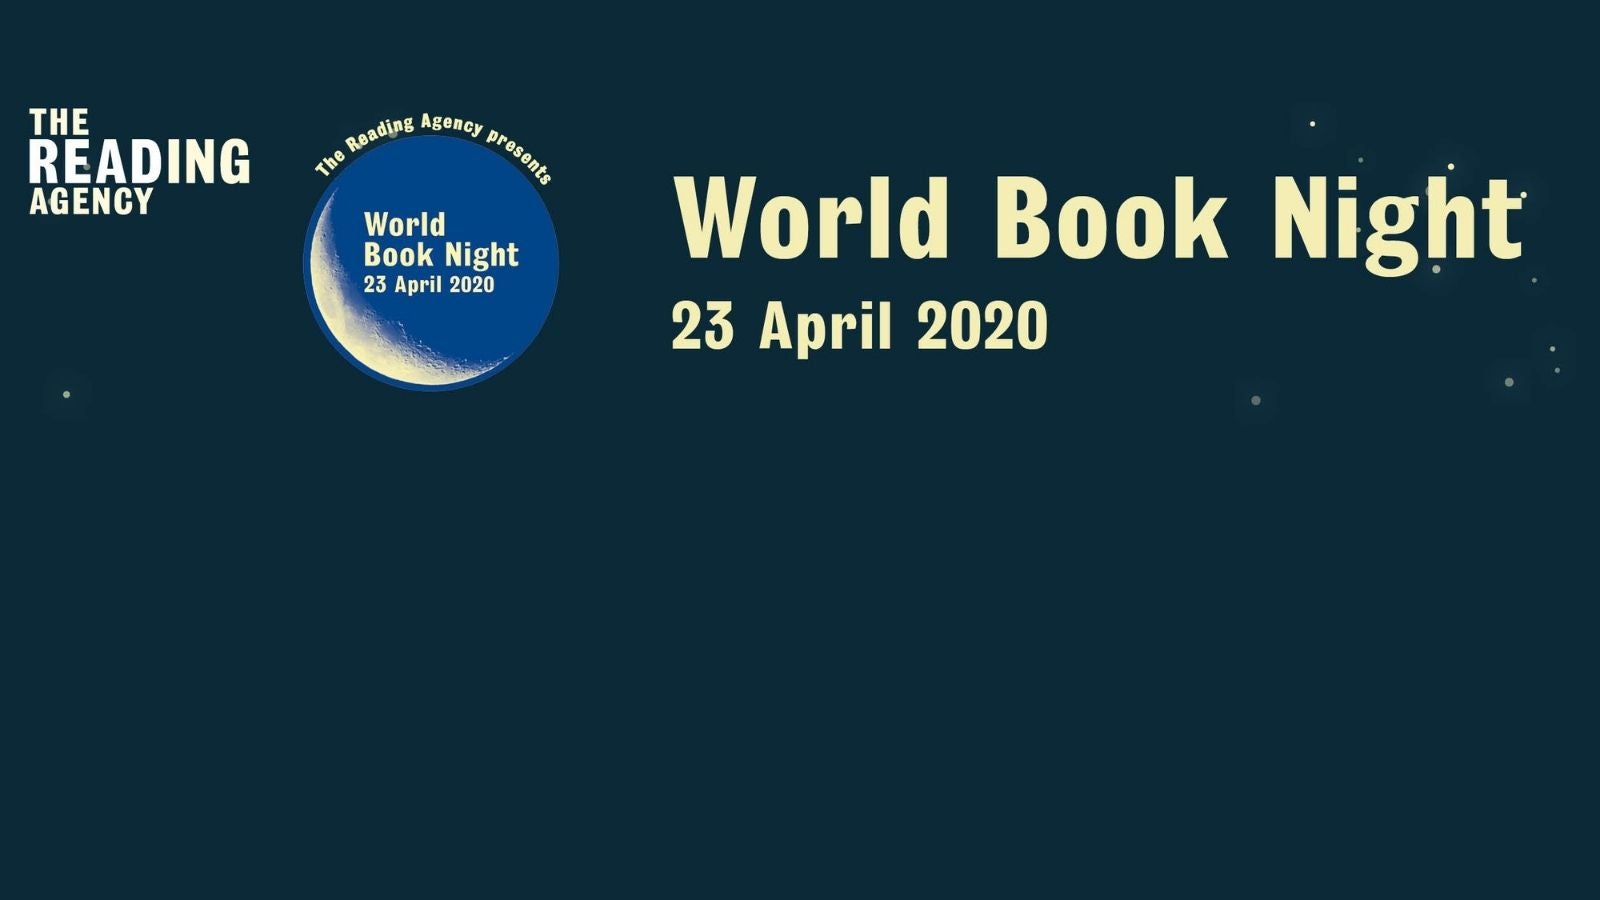 World Book Night 2020 logo on dark blue background